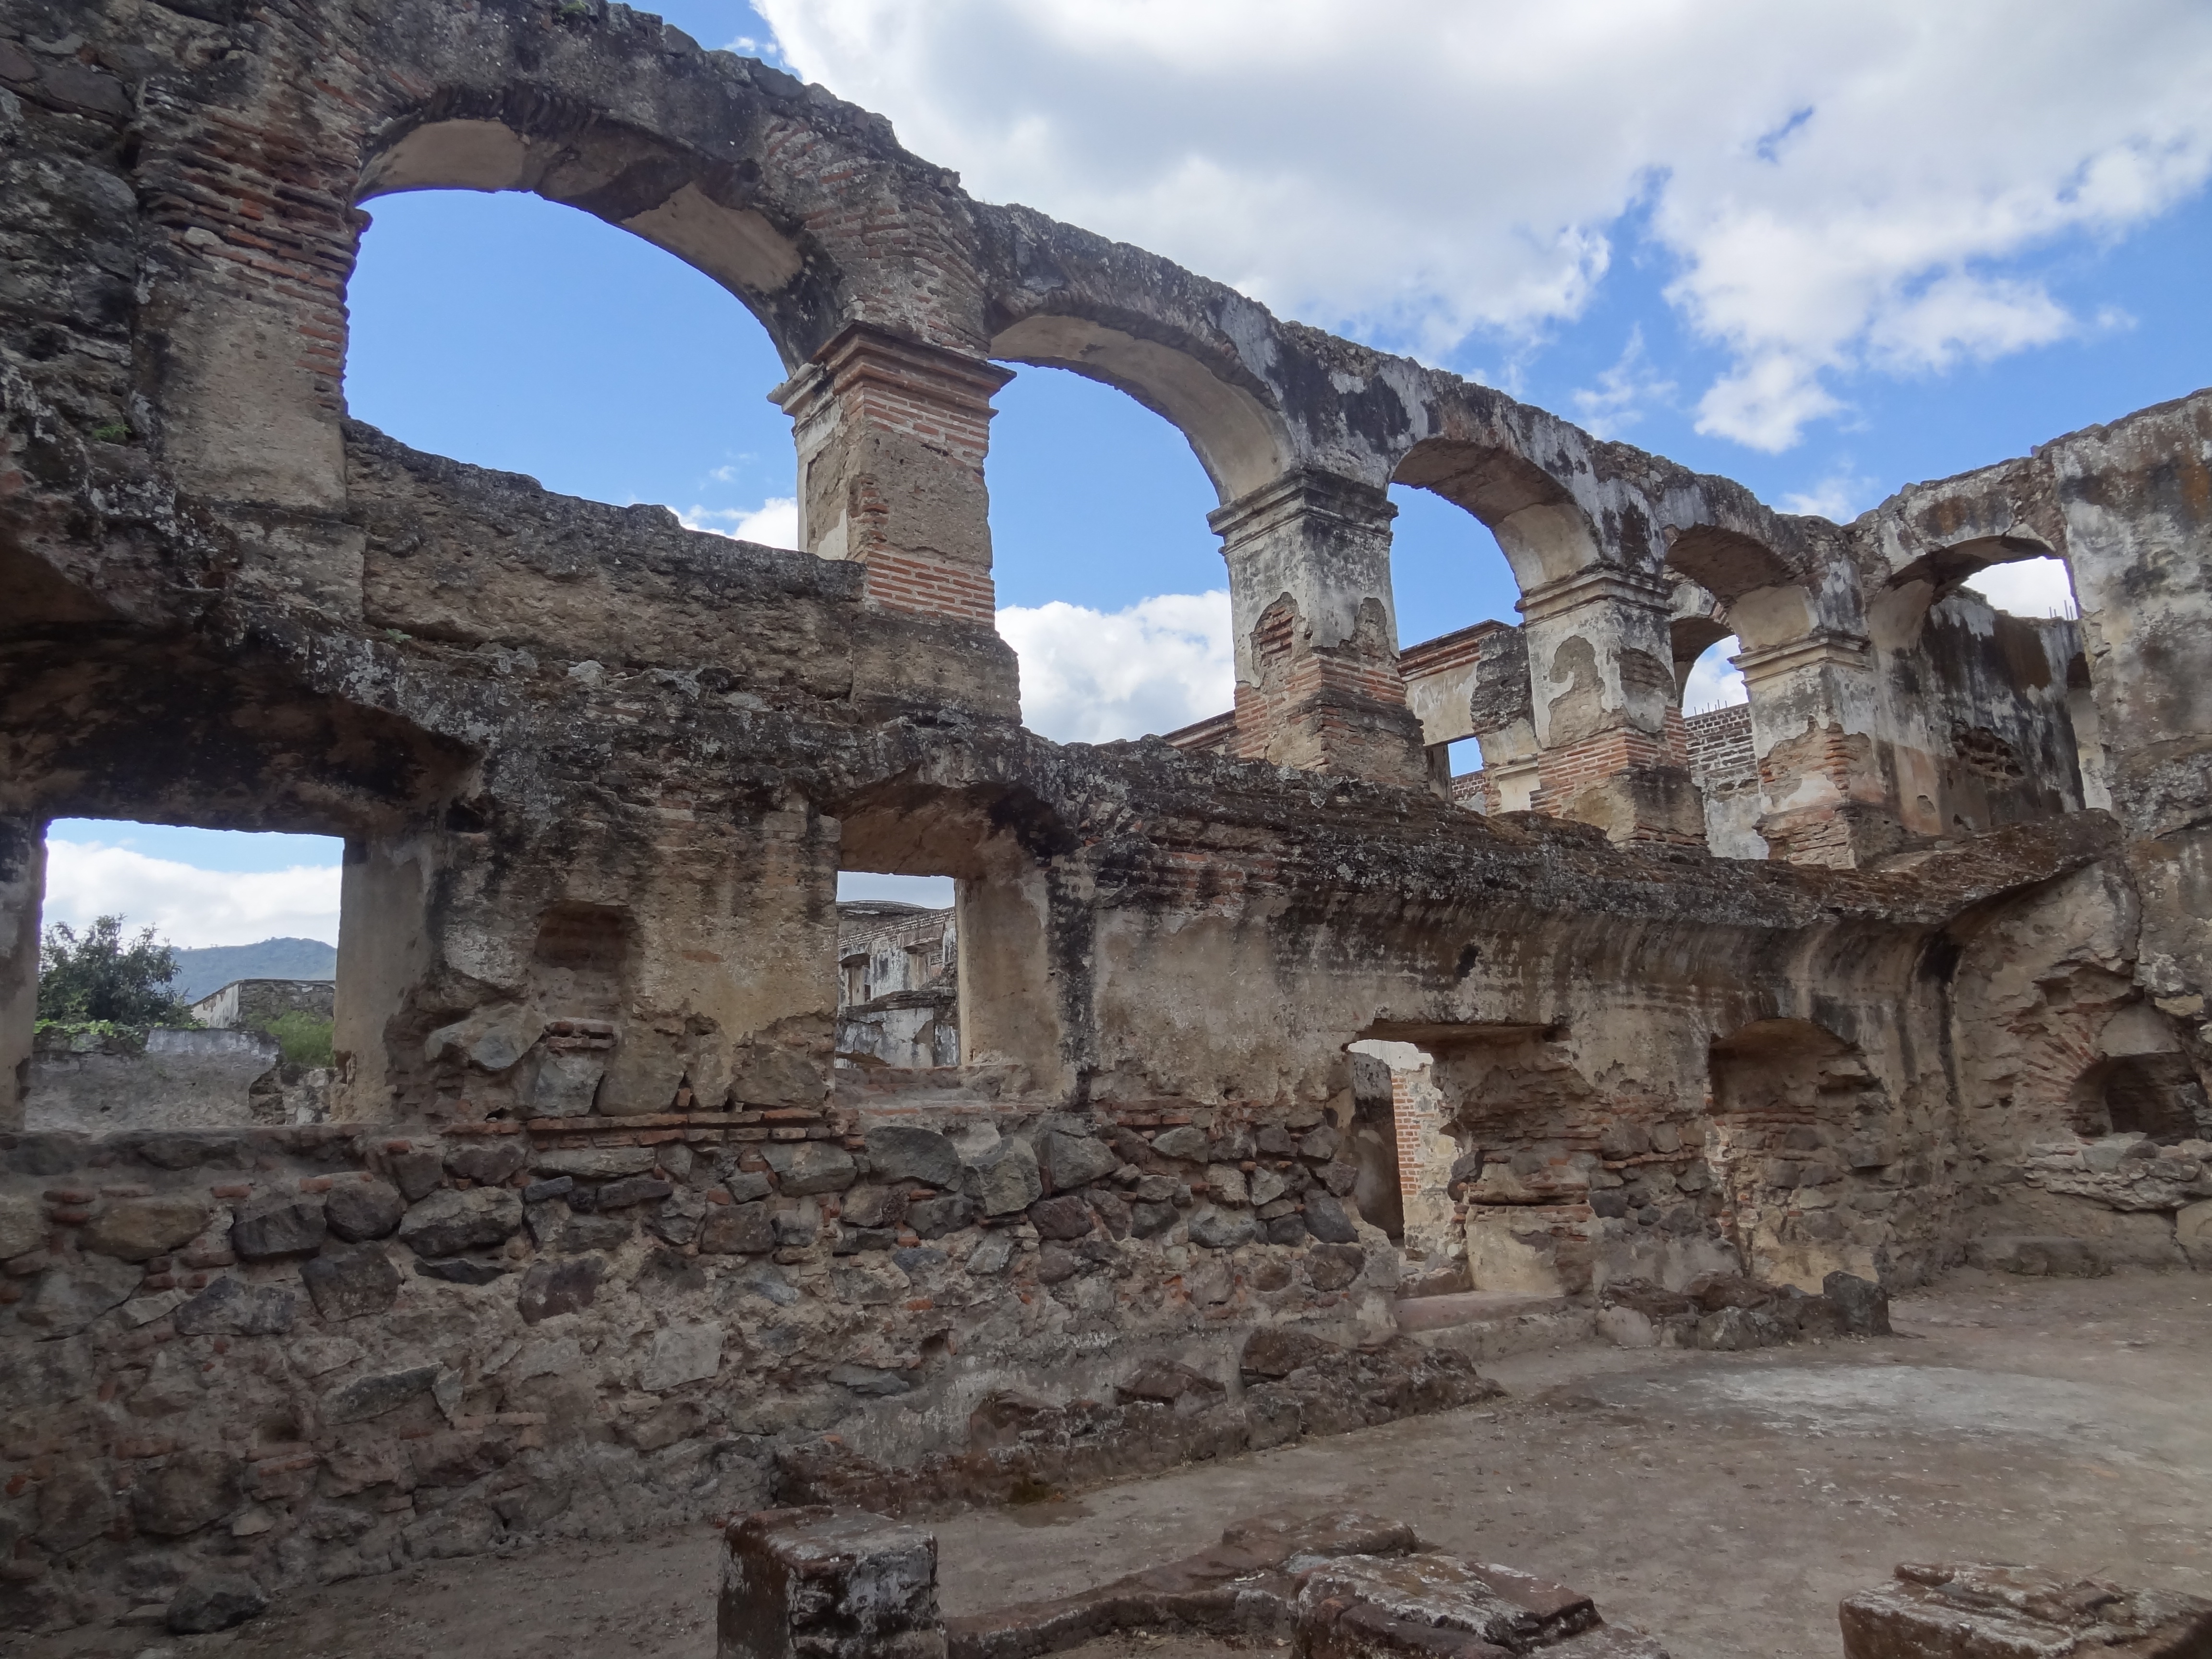 Voyage au Guatemala: Decouverte des ruines de la ville d'Antigua inscrite au Patrimoine Mondiale de l'Unesco.